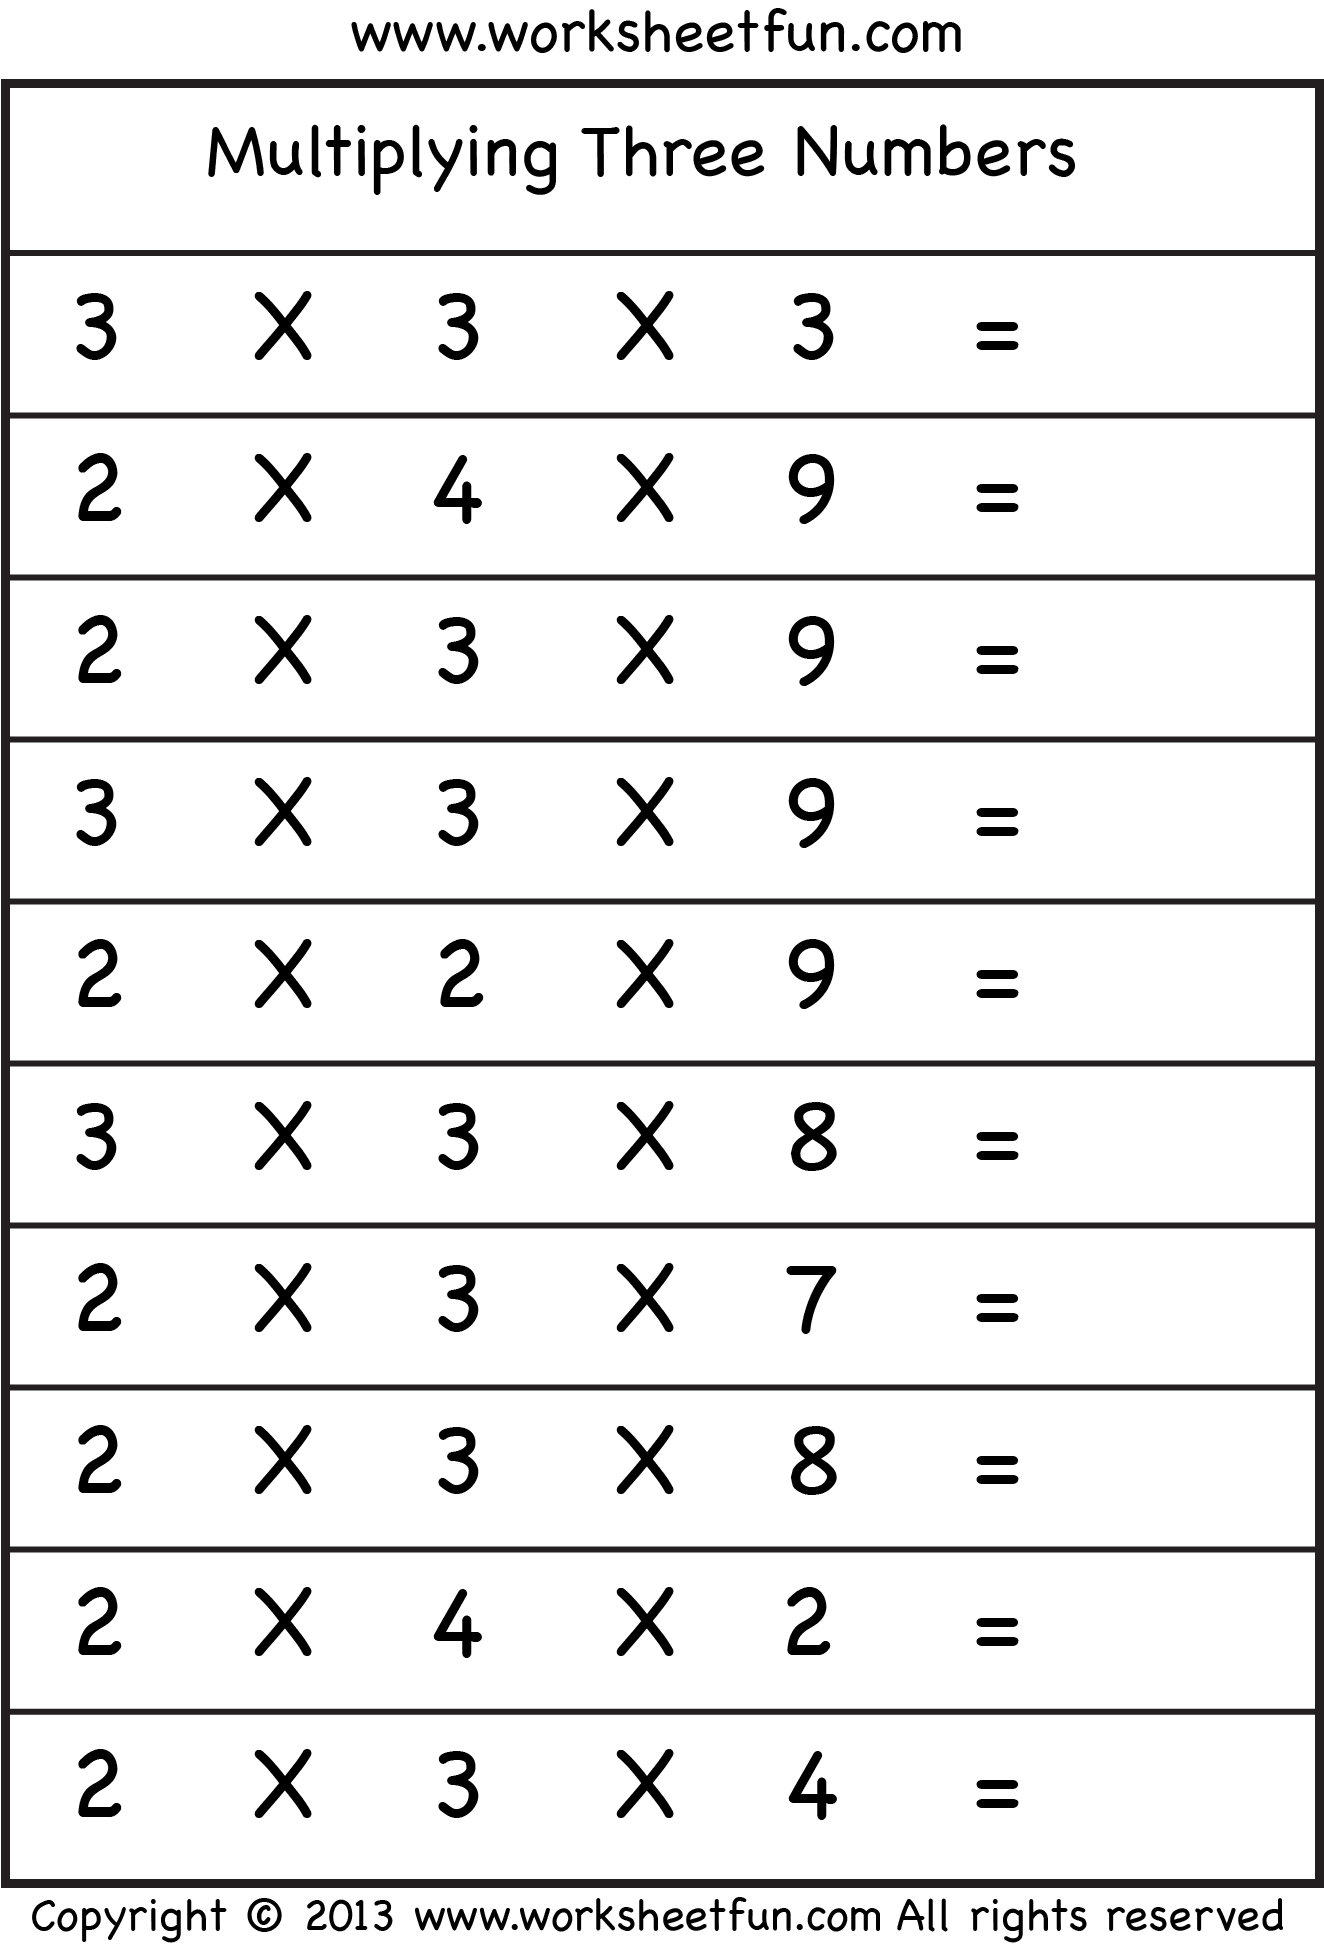 multiplying-3-numbers-three-worksheets-free-printable-worksheets-worksheetfun